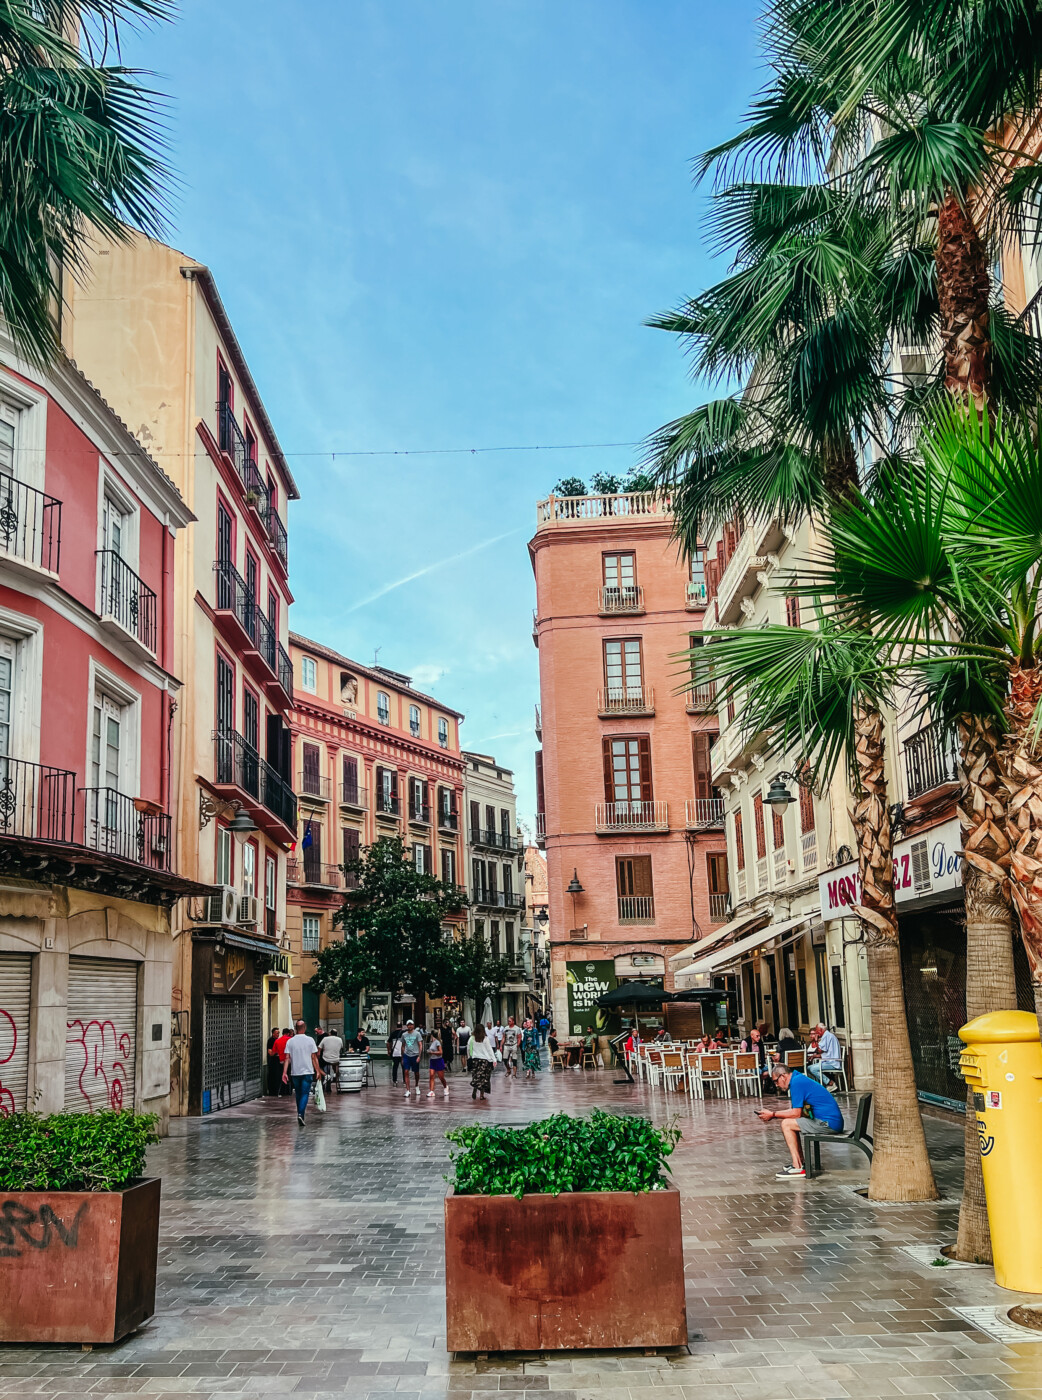 resa till Malaga tips information inspiration blogg